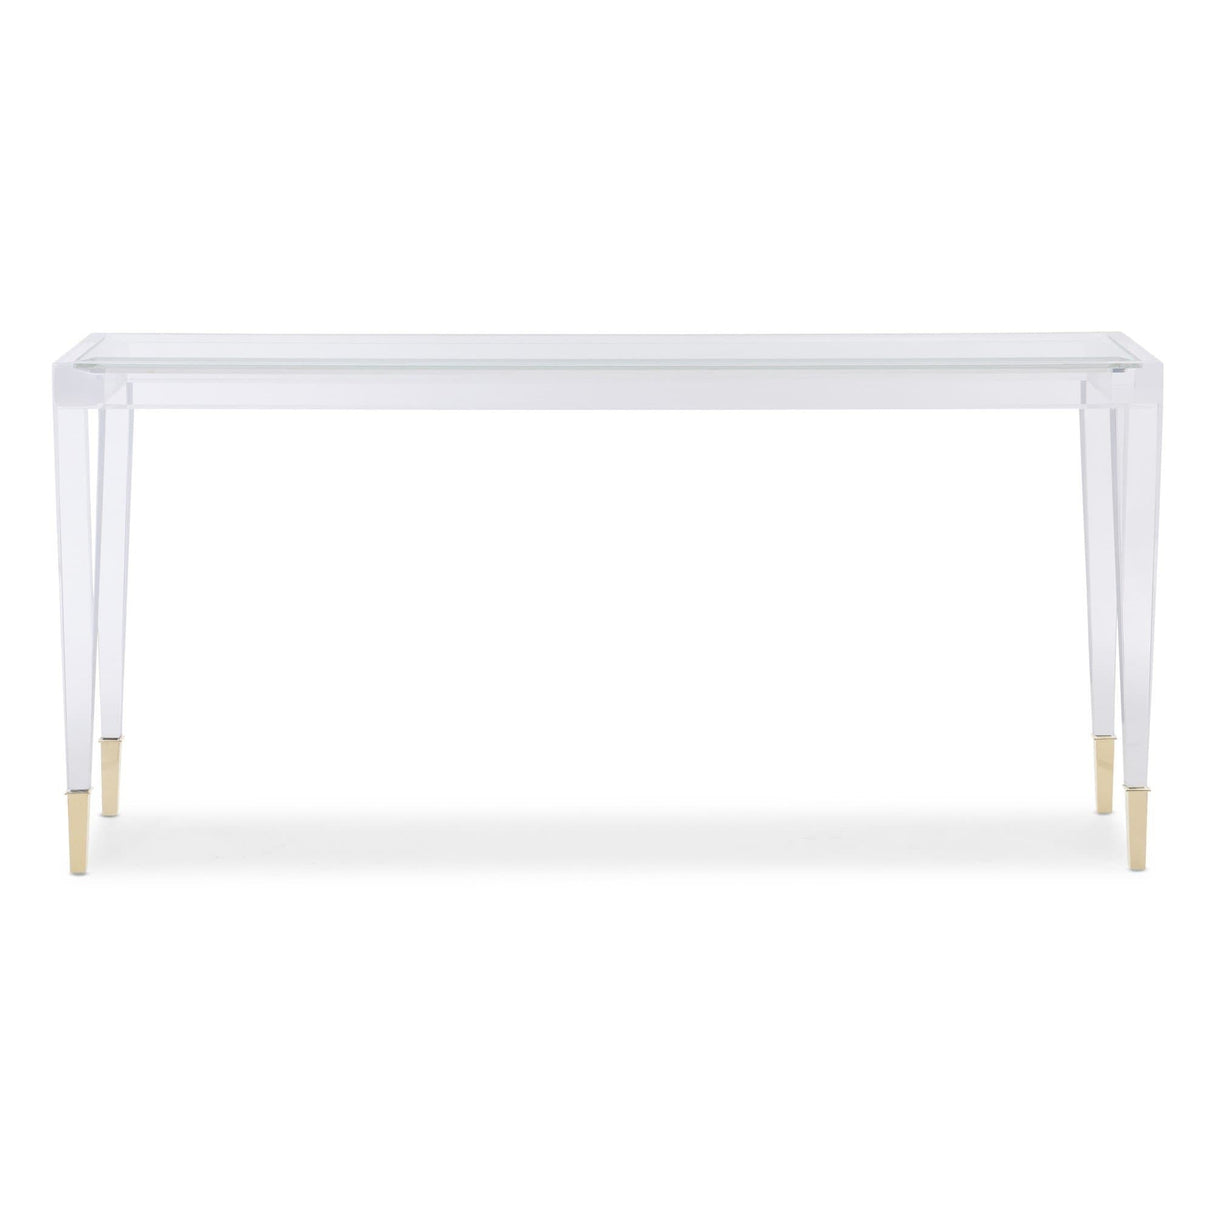 Caracole AHHHH Console Table Furniture caracole-CLA-019-443